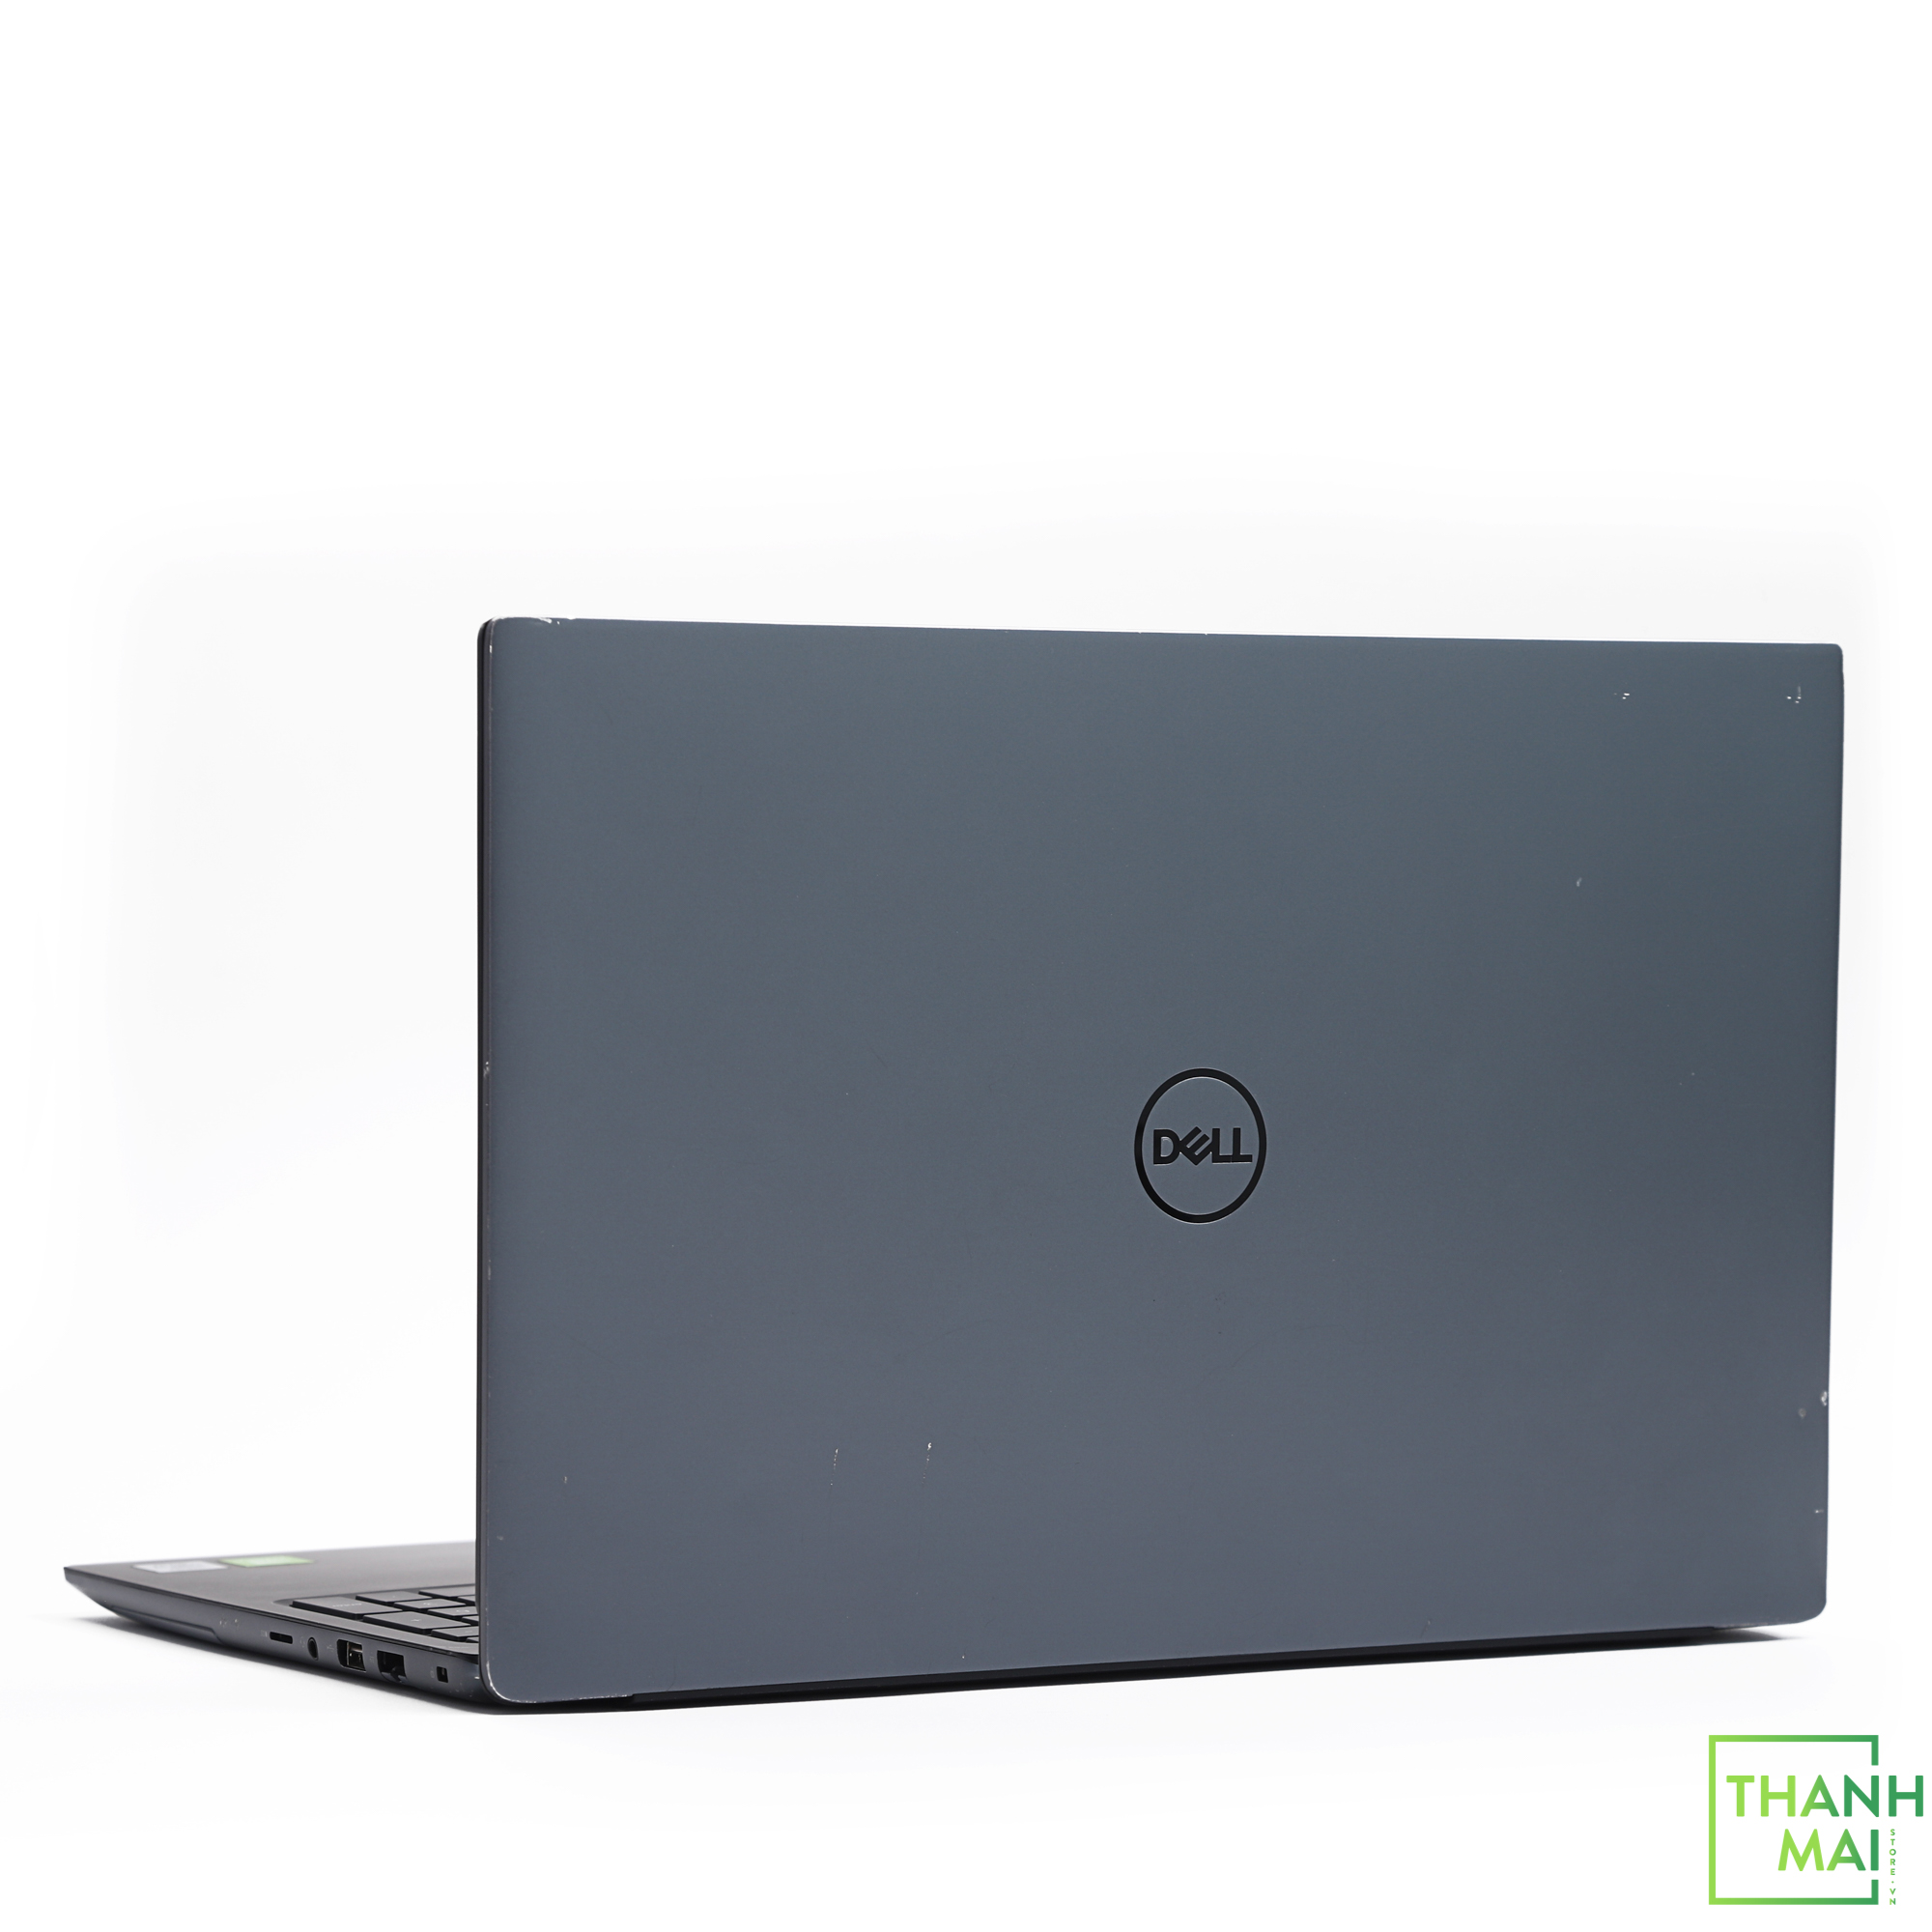 Laptop Dell Vostro 5590 | Intel Core I7-10510U | Ram 16GB | 512GB SSD Pcie | VGA NVIDIA GeForce MX250 2GB | 15.6" FHD | W10